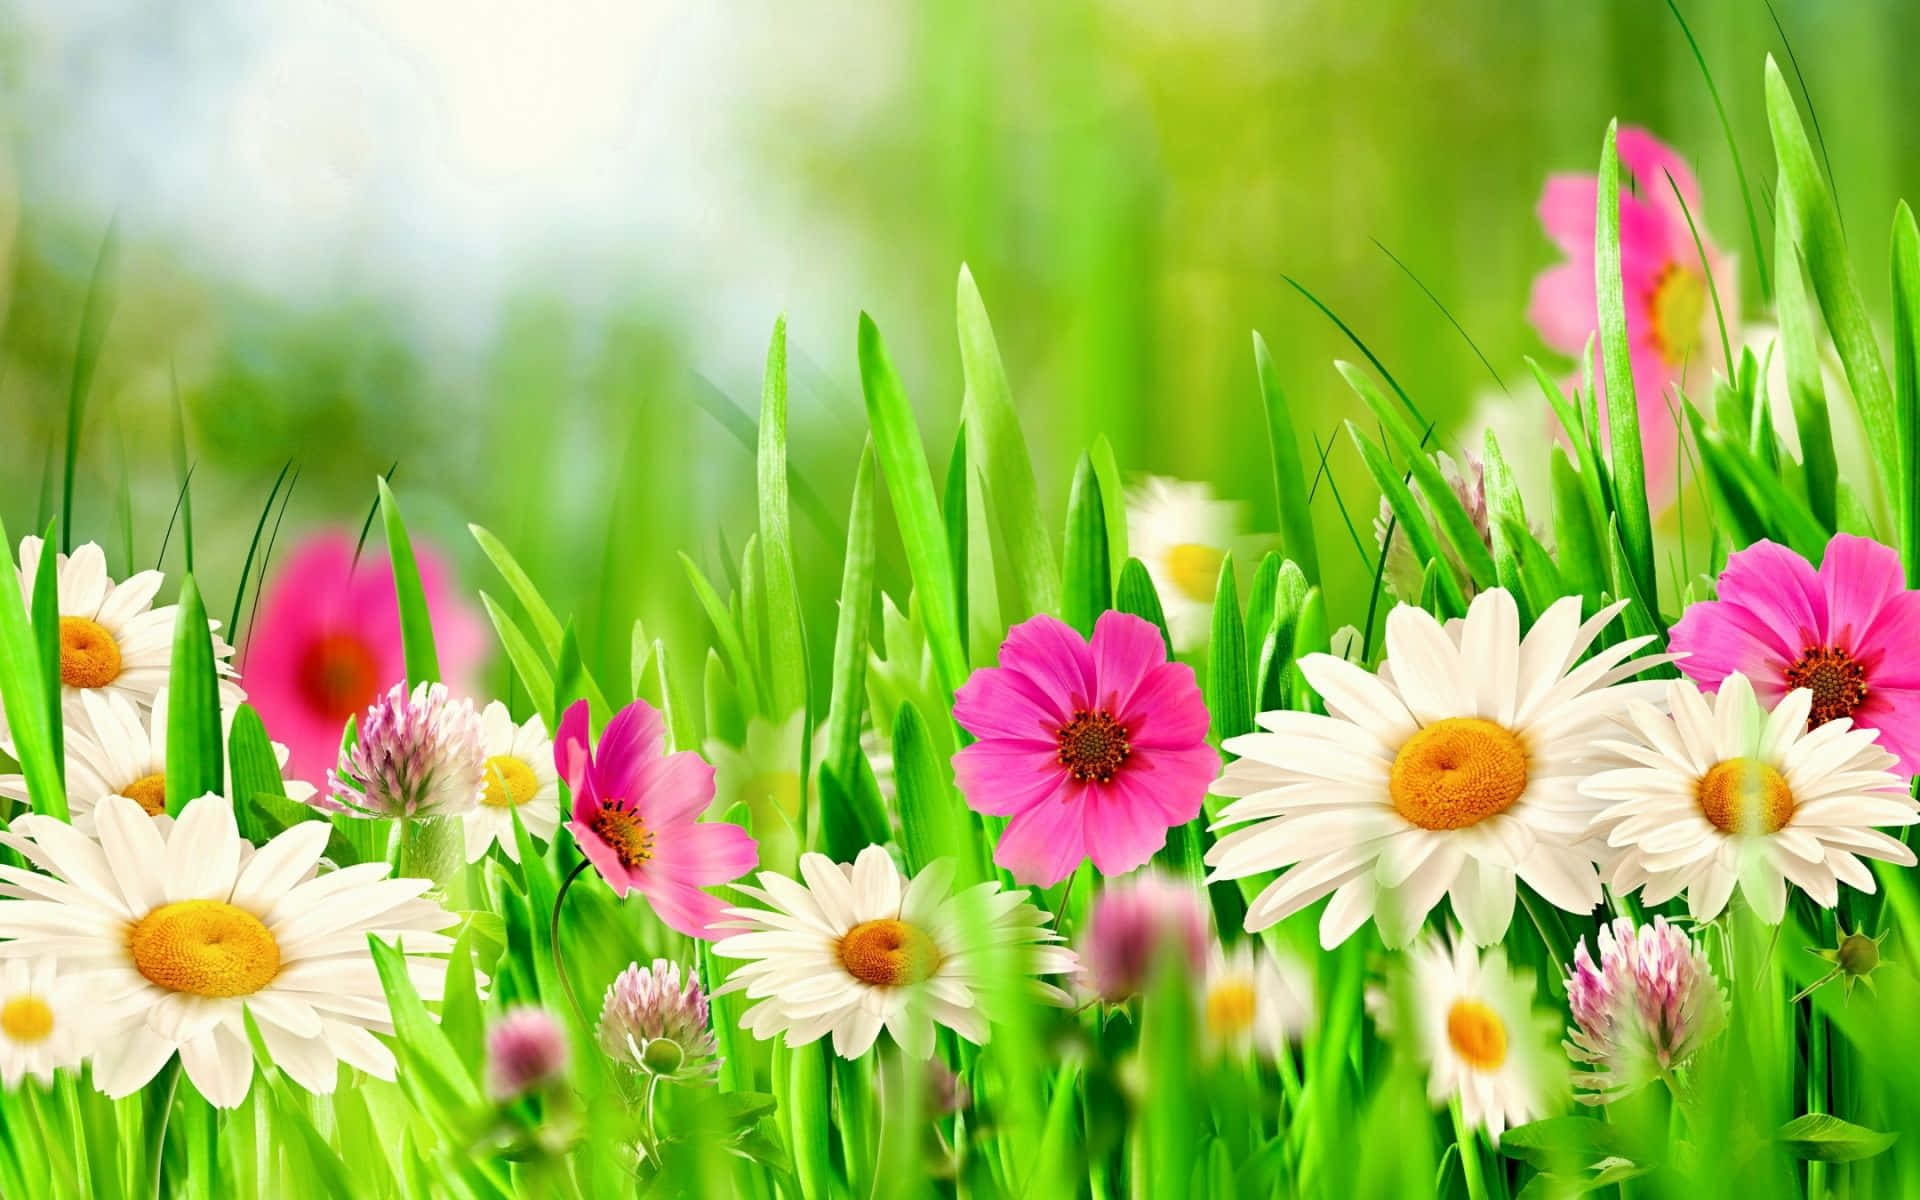 Erlebedie Schönheit Des Frühlings Mit Diesem Lebendigen Strauß Aus Bunten Blumen.